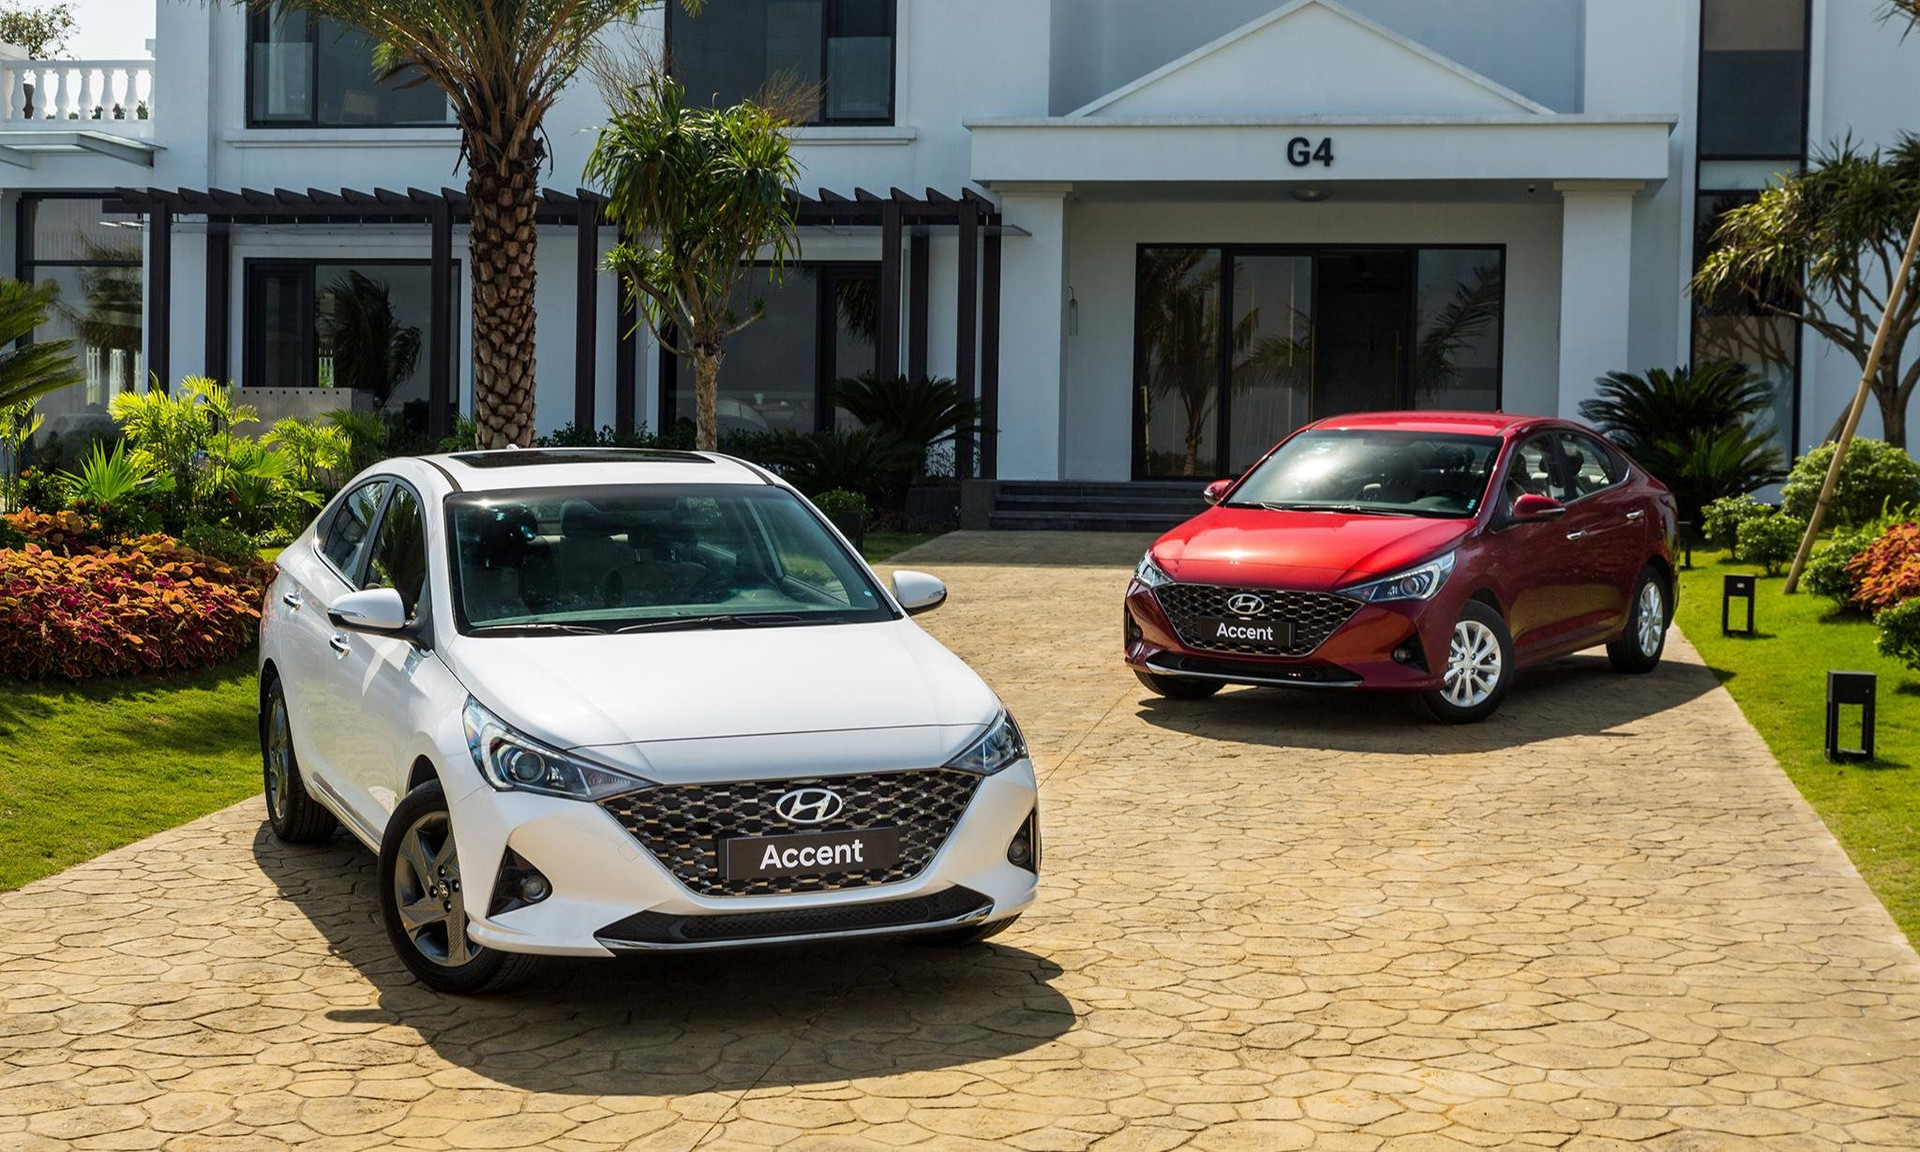 Hyundai bán xe nhiều gấp đôi tháng trước, chốt đơn 10.000 xe trong quý đầu năm, Accent thống trị doanh số- Ảnh 1.